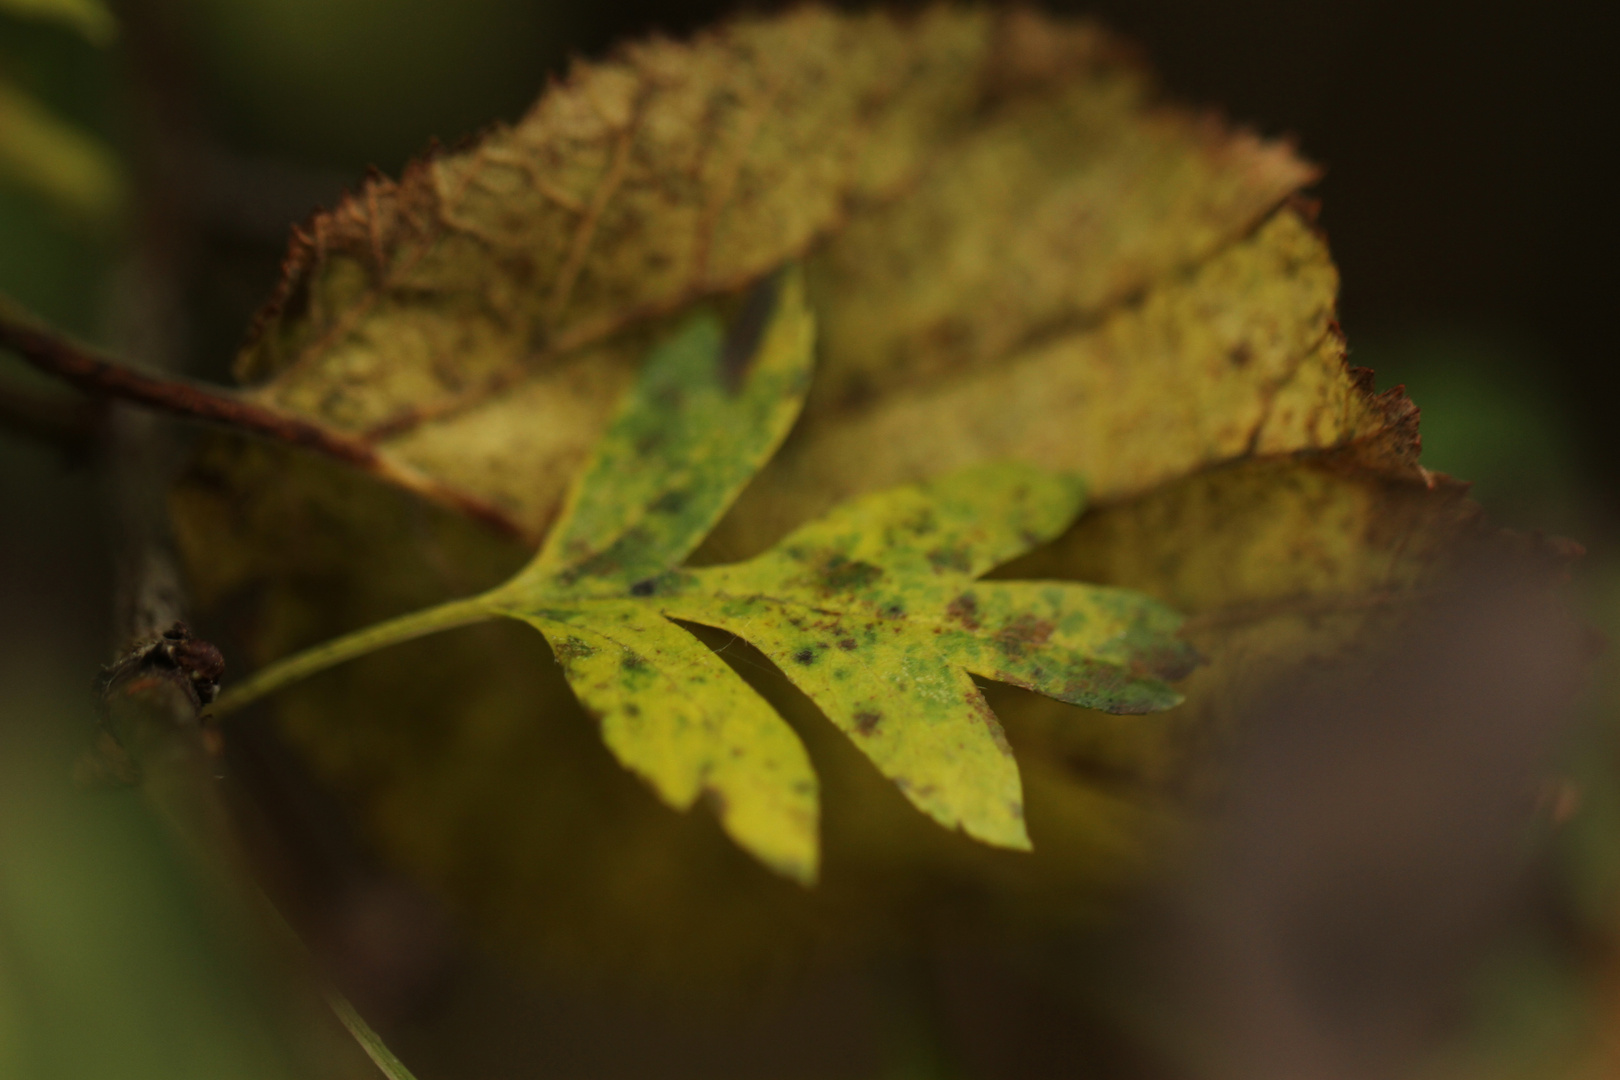 Delicate Autumn leaf